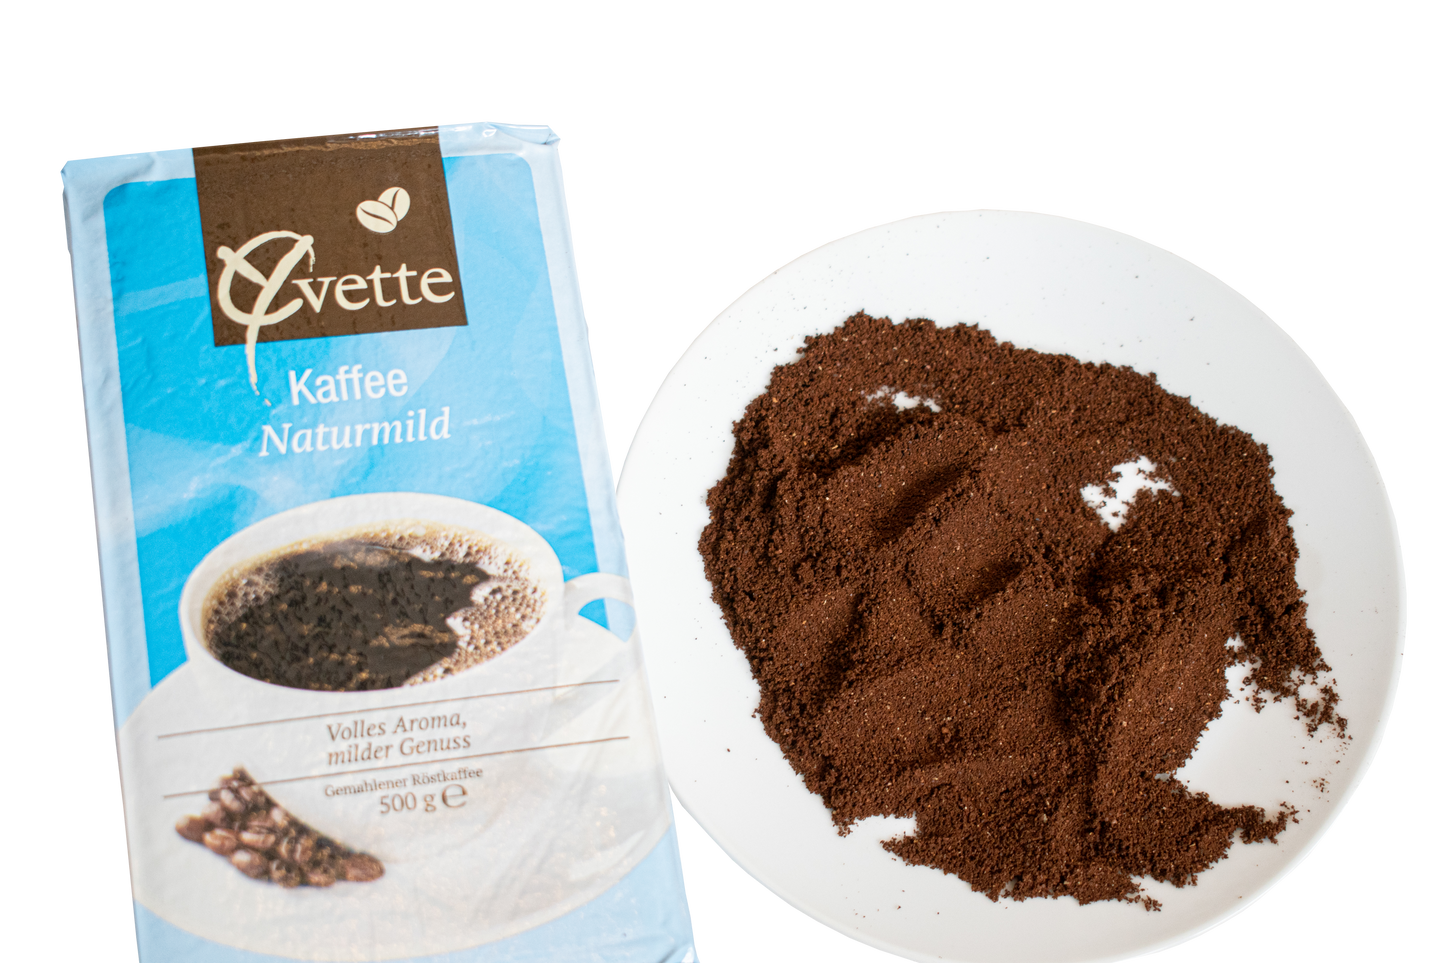 500g gemahlener Filterkaffee der Sorte Naturmild der Marke Yvette Kaffee mit Haufen gemahlenen Kaffee als Serviervorschlag